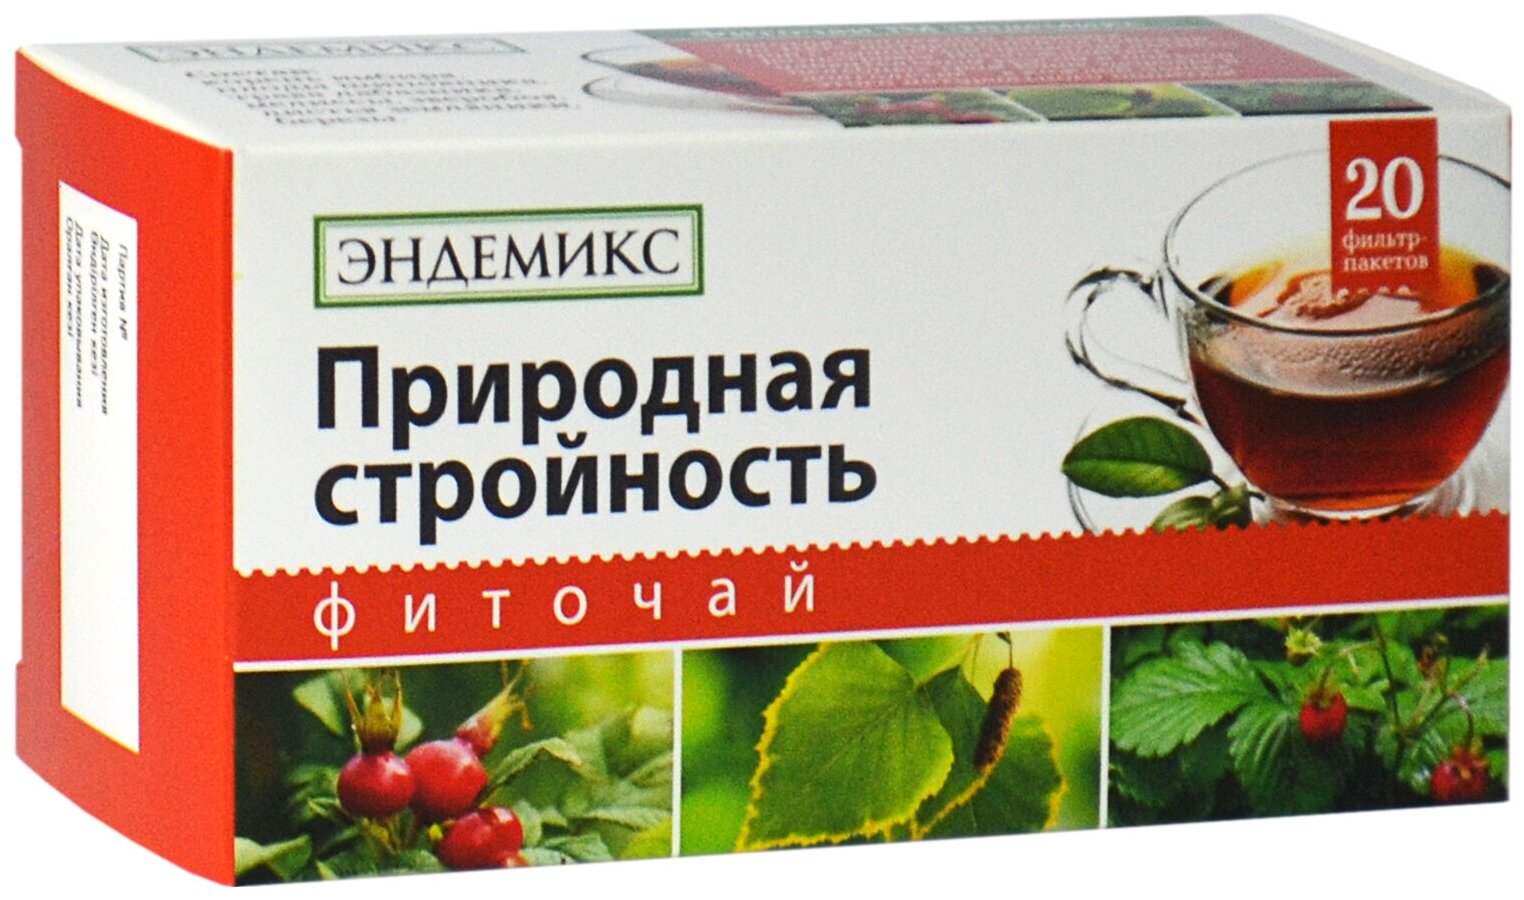 Травяной чай Эндемикс в пакетиках алтайский для похудения «Природная стройность», очищение организма, детокс, 20 шт.